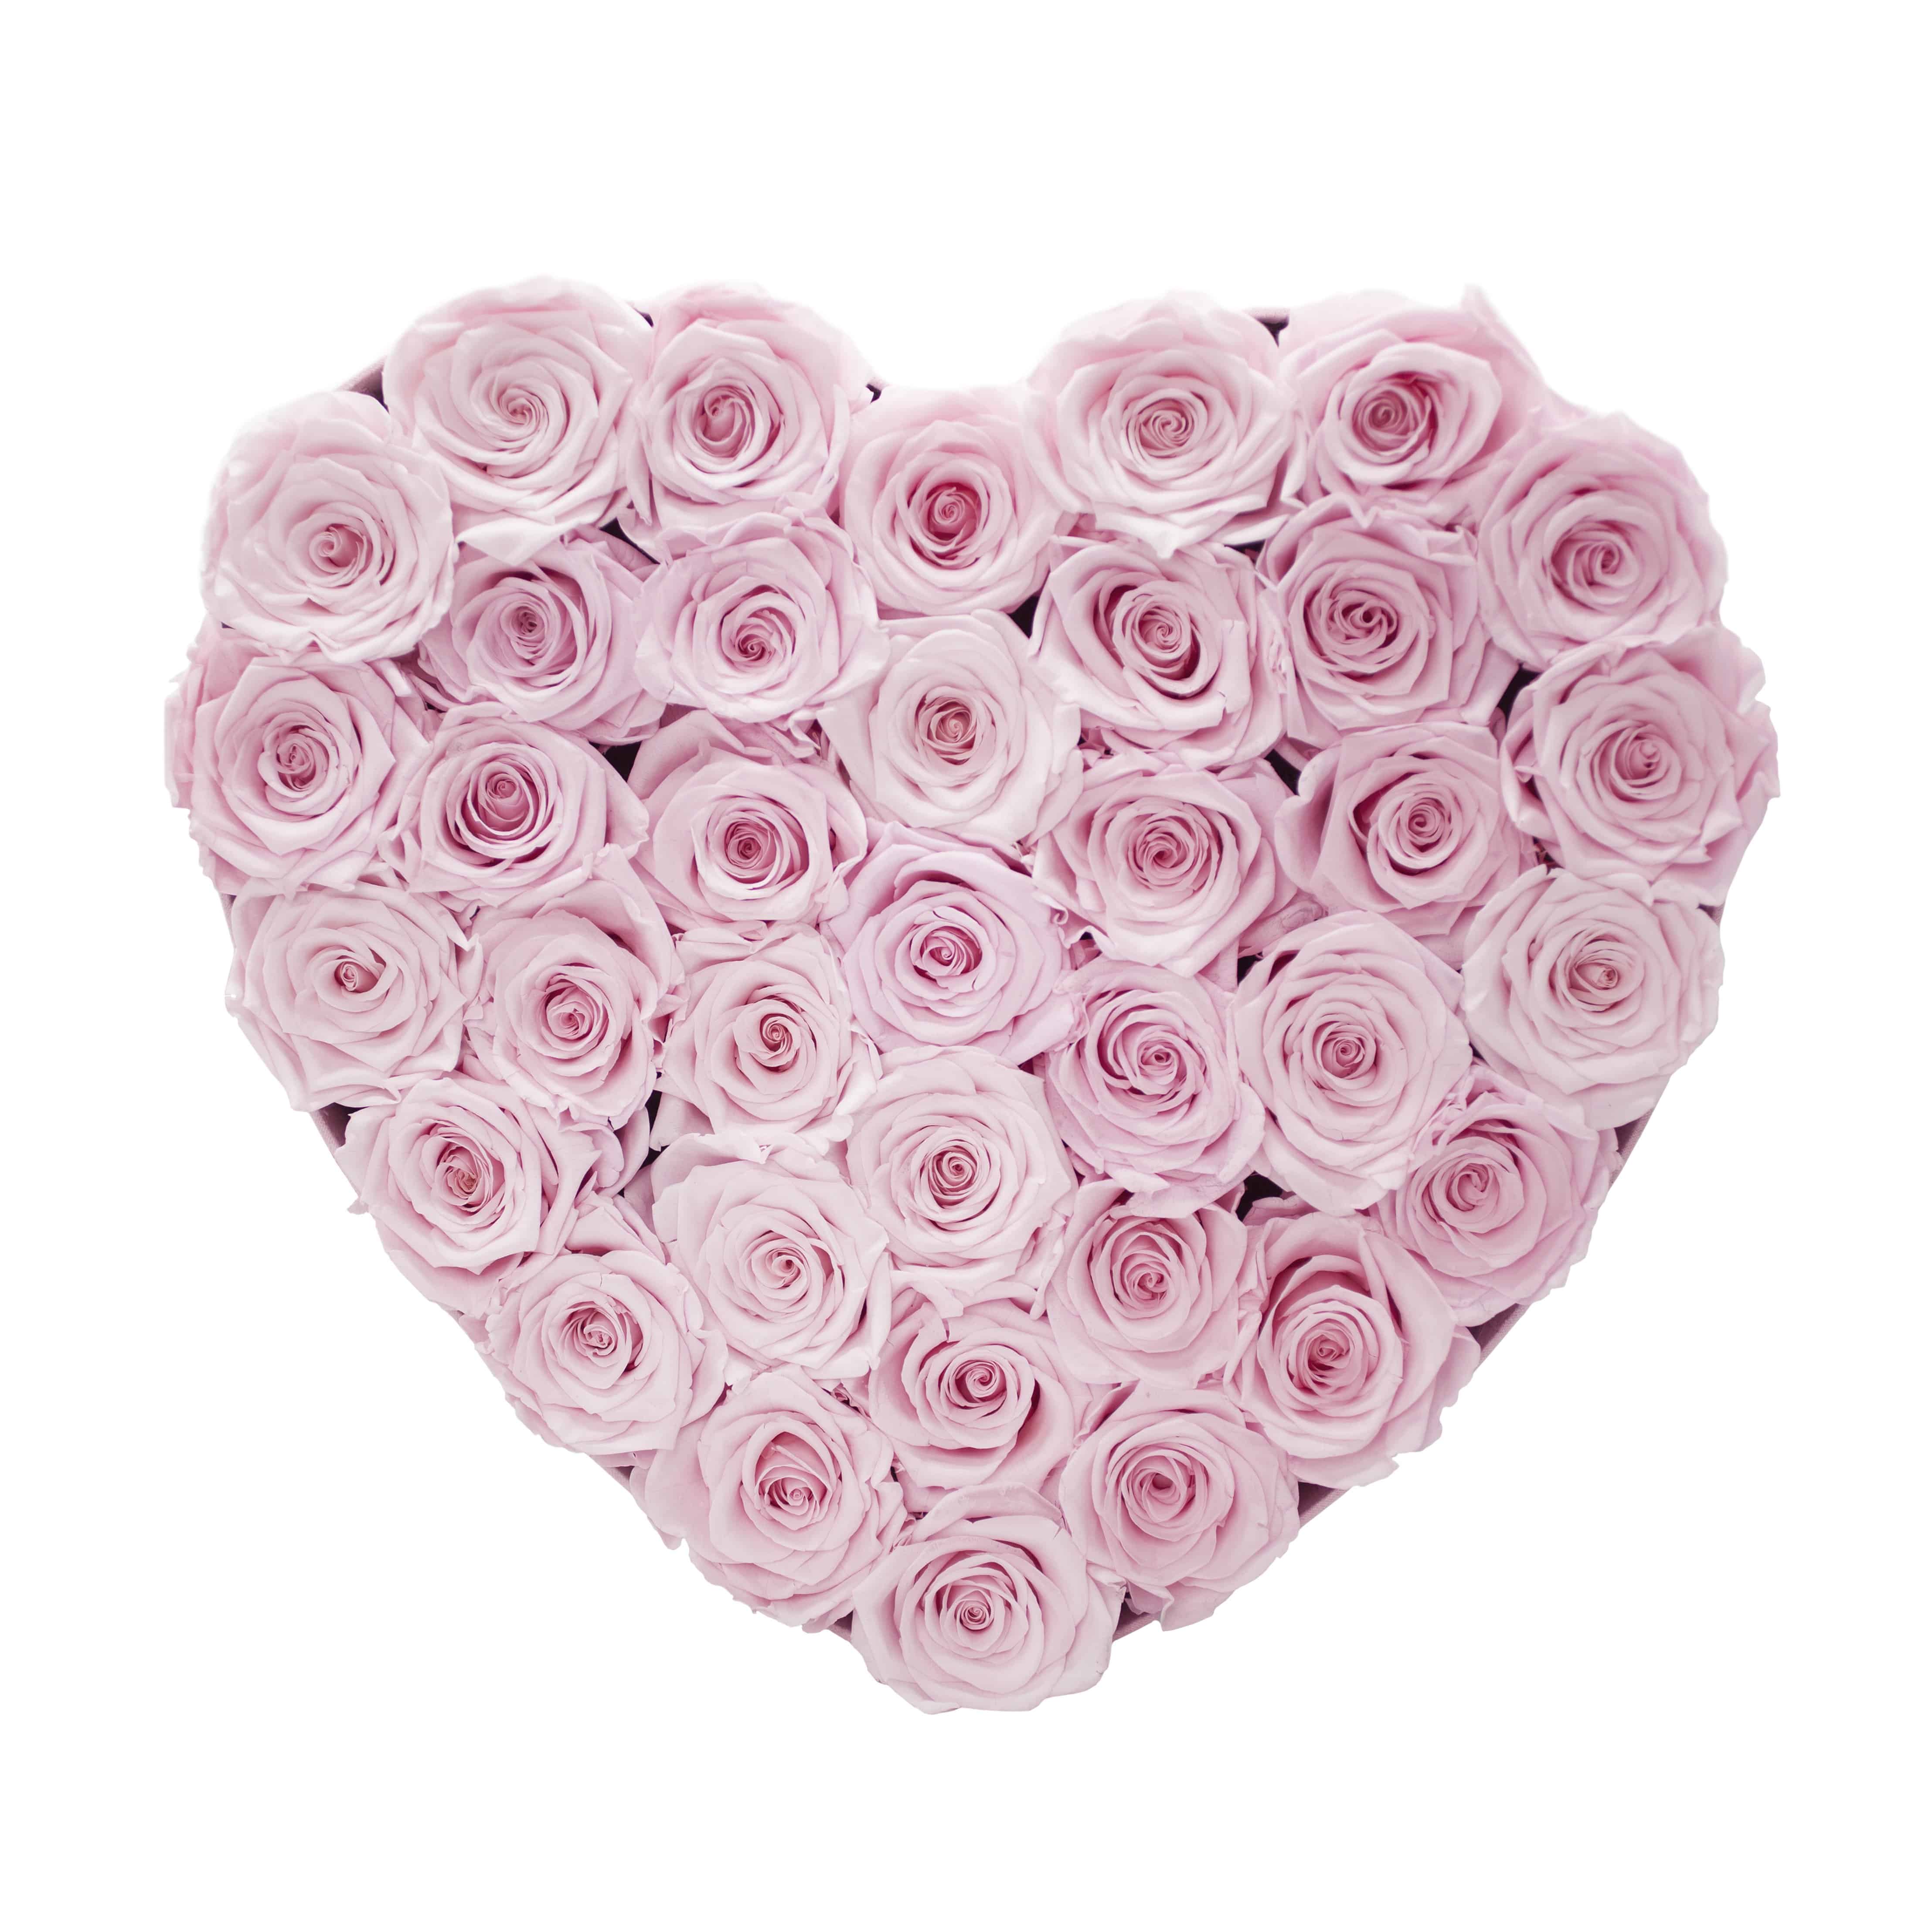 heart shape, $150-$500 gift ideas, heart flowers